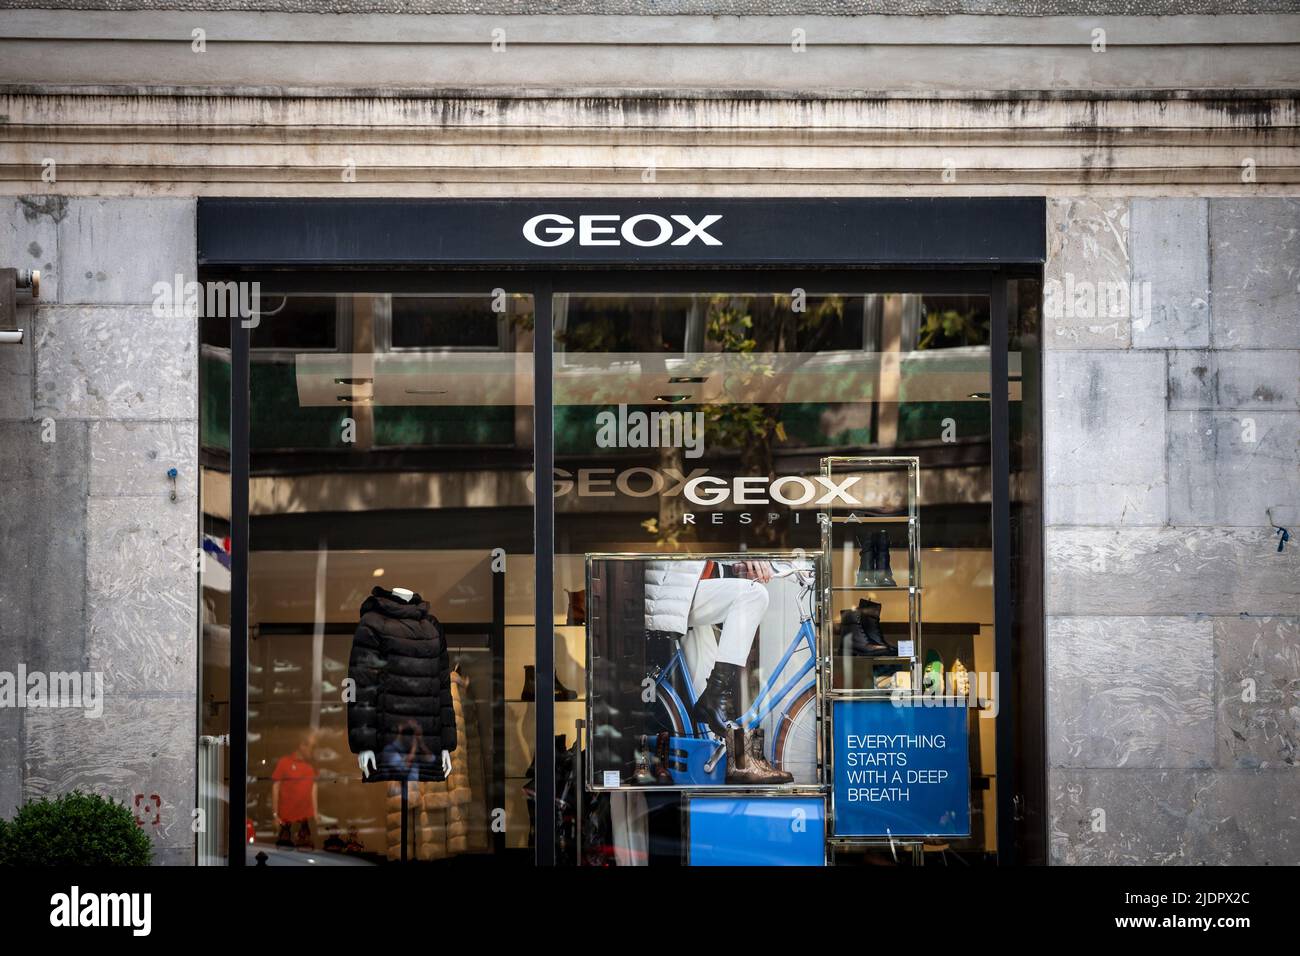 Imagen de un cartel con el logotipo de Geox tomado en su tienda en Ljubljana, Eslovenia. Geox es una marca italiana de calzado y ropa fabricada wa Fotografía stock -